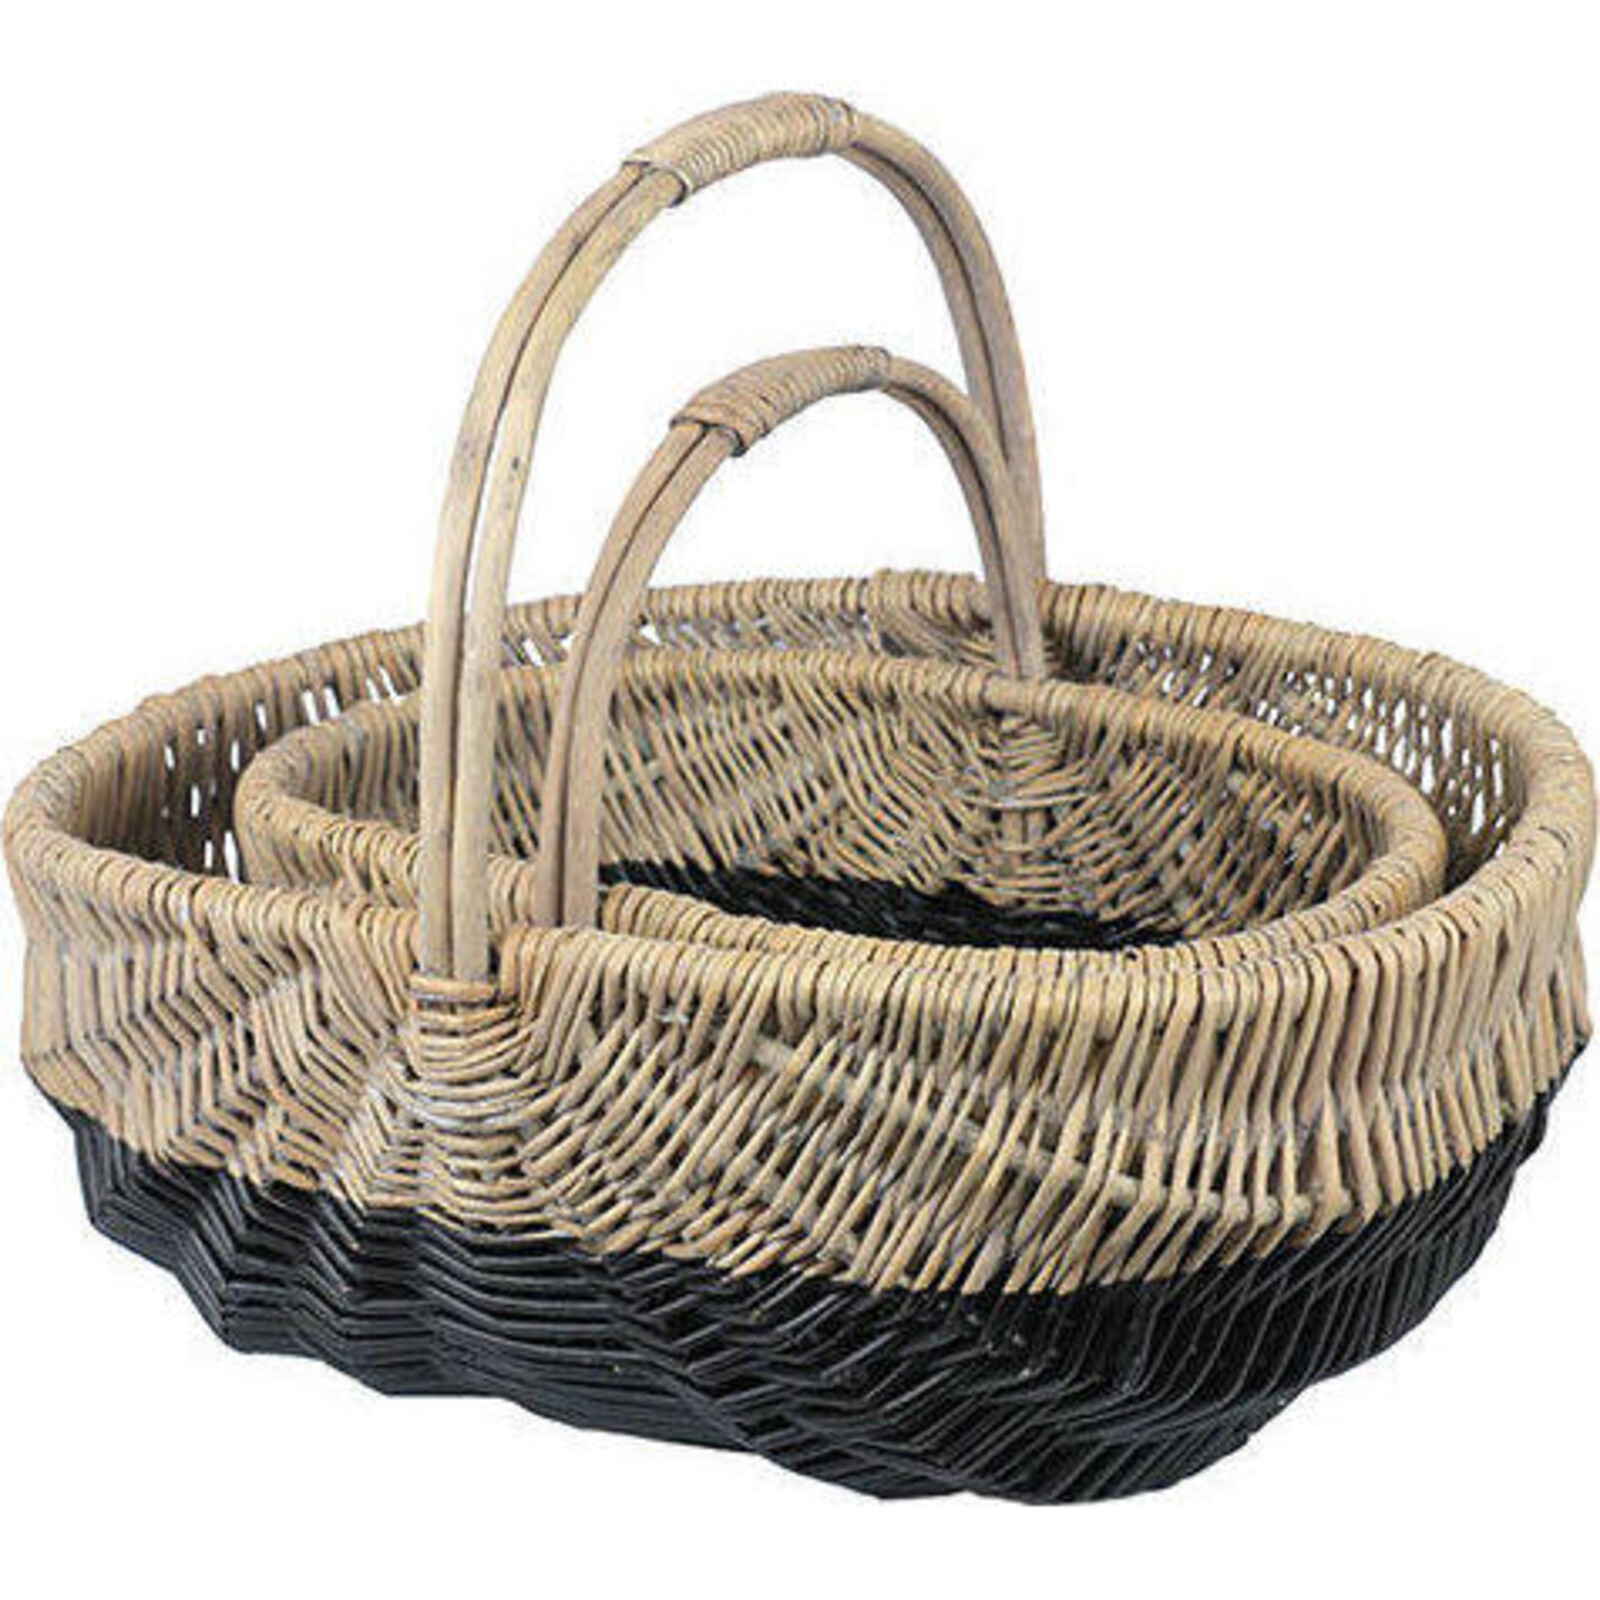 Carry Basket Black Dip S/2